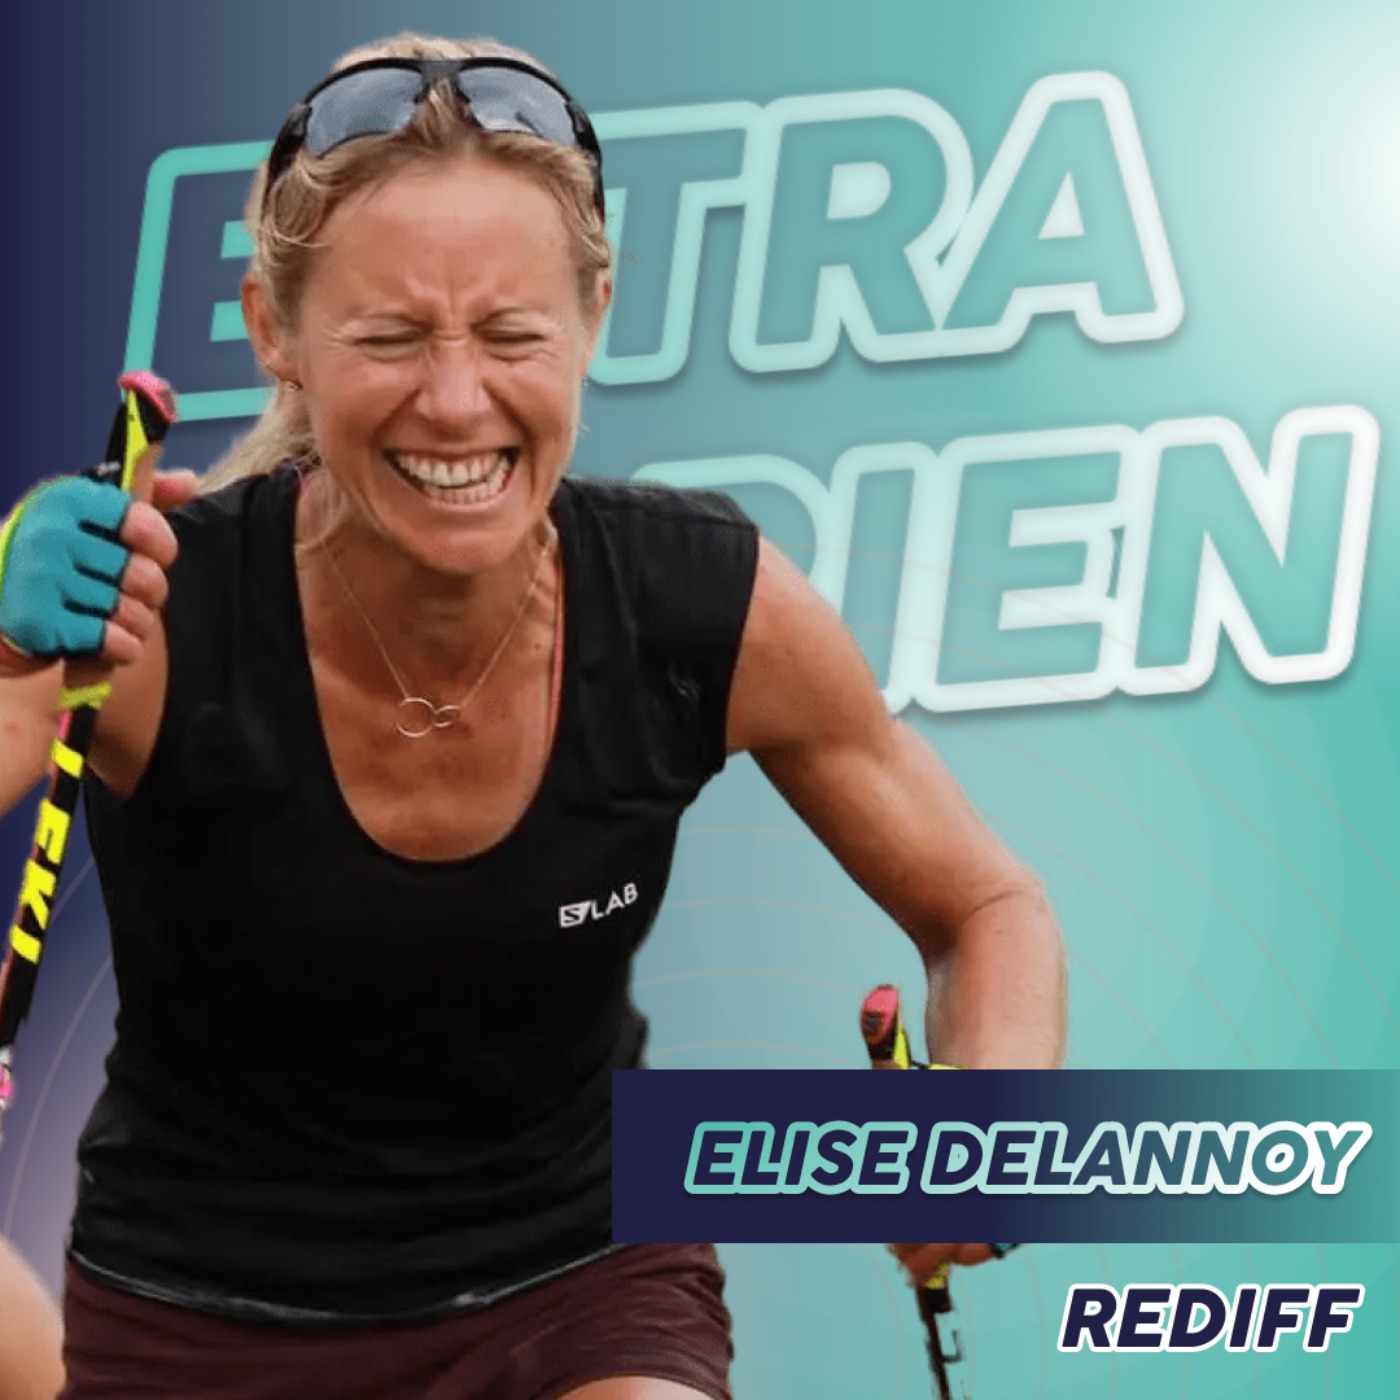 Elise Delannoy - Record de dénivelé positif en 24h.